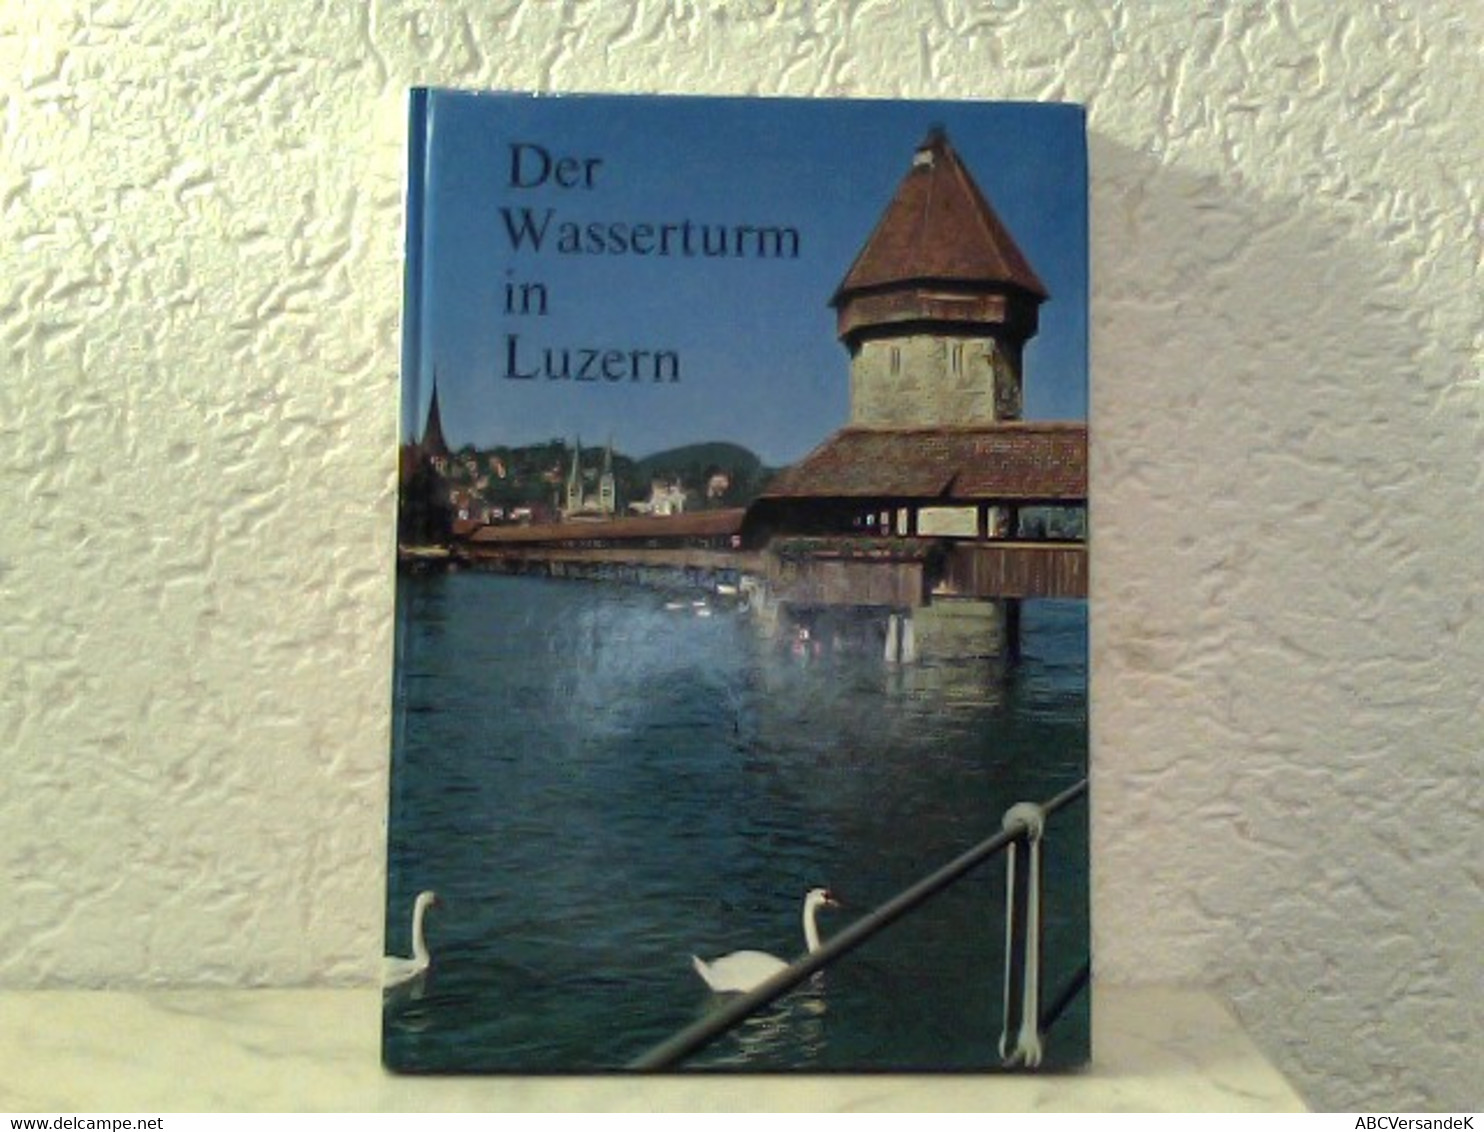 Der Wasserturm In Luzern - Herausgegeben Als Beitrag Zur 800 - Jahr - Feier Der Stadt Luzern - Switzerland